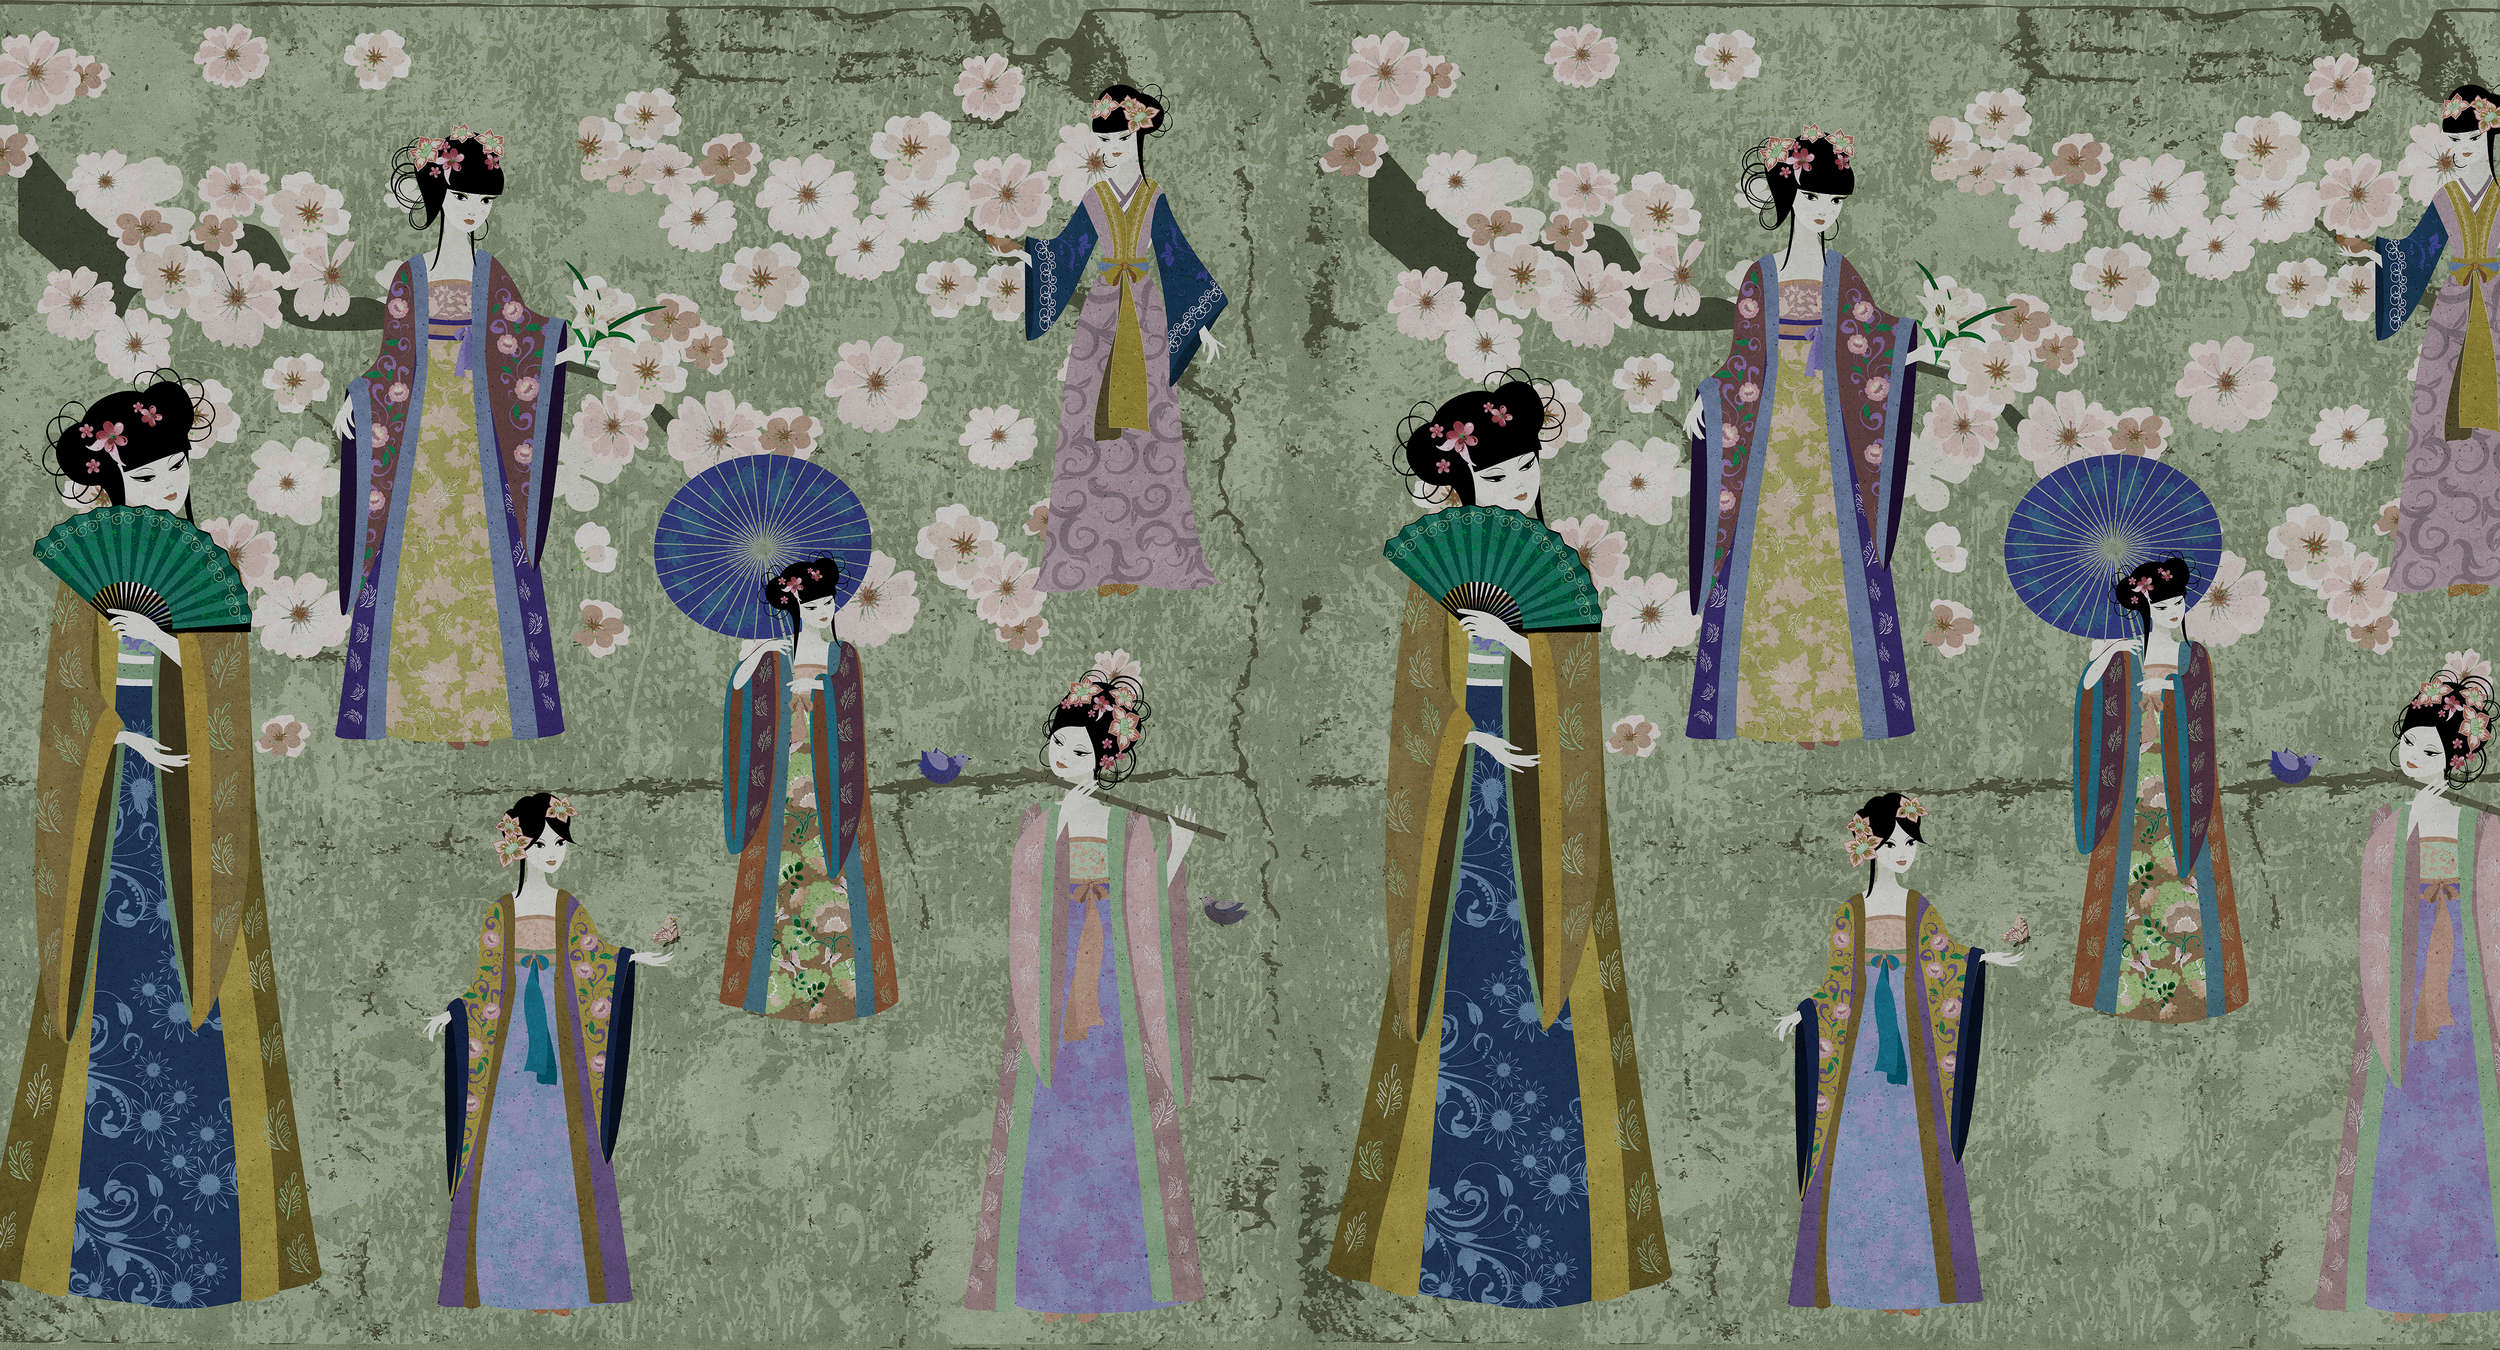             Fotomurali Giappone Comic con fiori di ciliegio - Verde, Blu
        